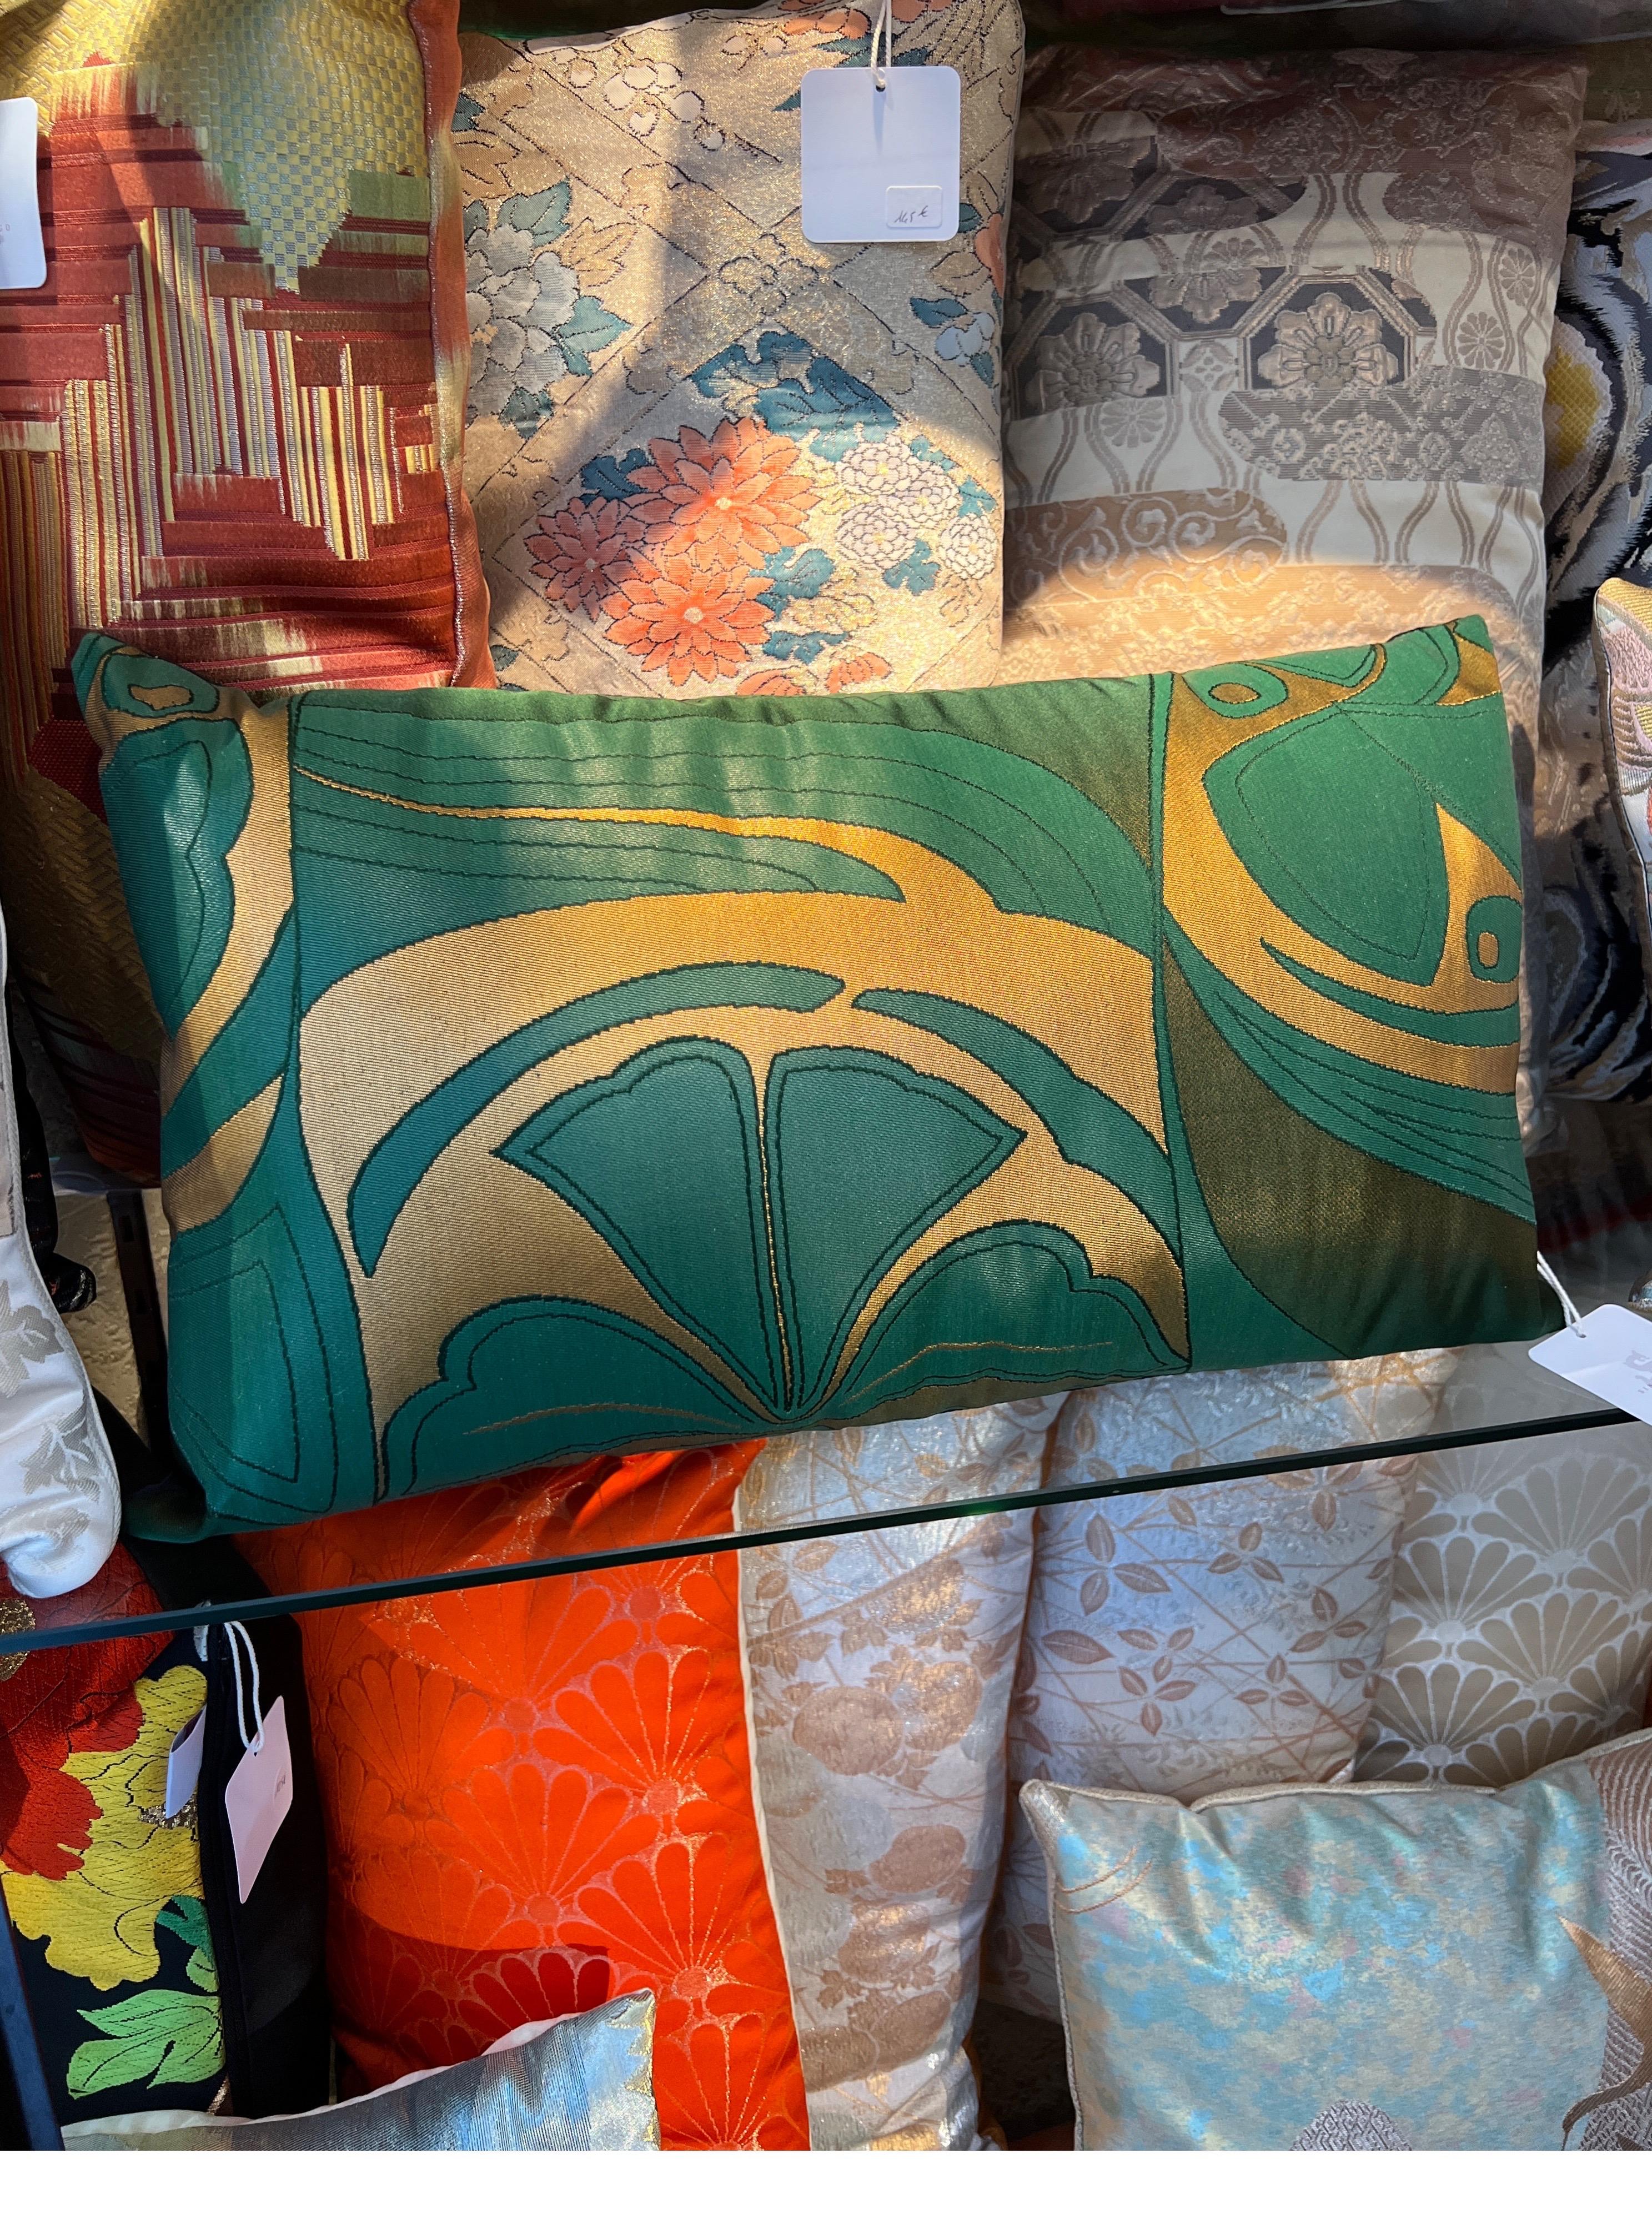 Un spectaculaire oreiller en lombar wowen en soie et fils métalliques.

Acheter des coussins faits main chez Sinapango Interiors Paris, confectionnés à partir de soie Obi vintage fabriquée dans le quartier de Nishijin à Kyoto au Japon, c'est non